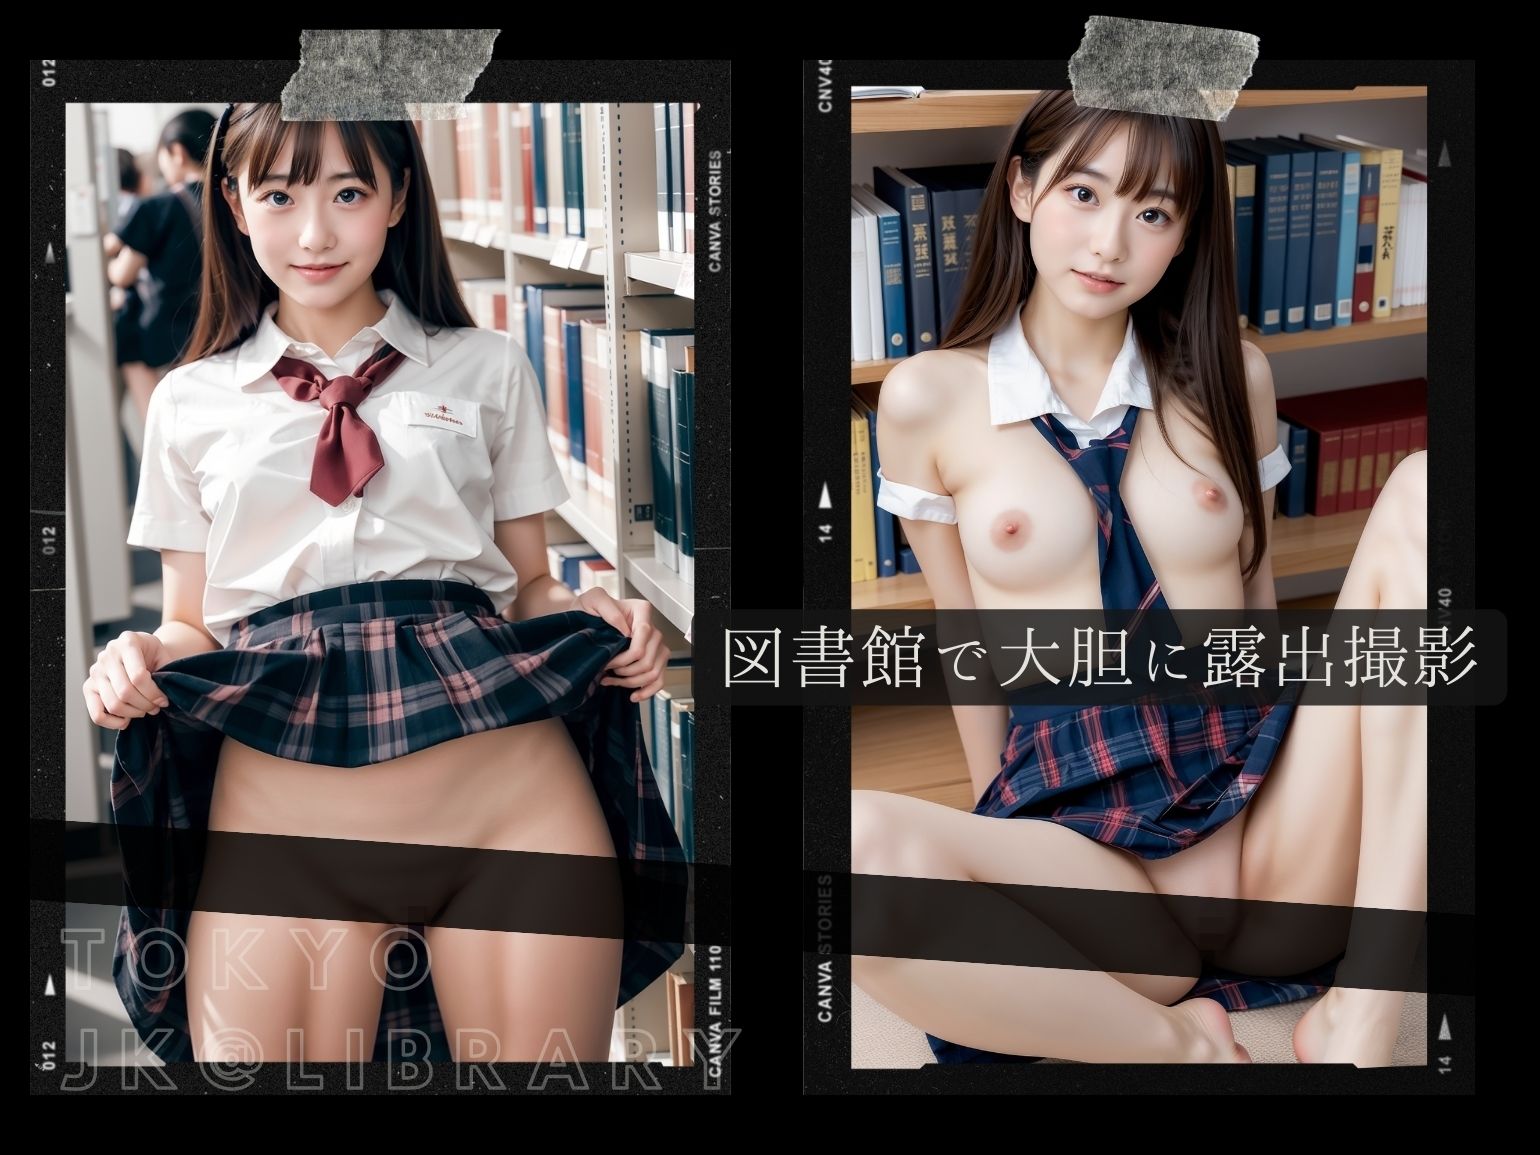 東京露出図書館 - 可愛すぎるJKの露出セックス